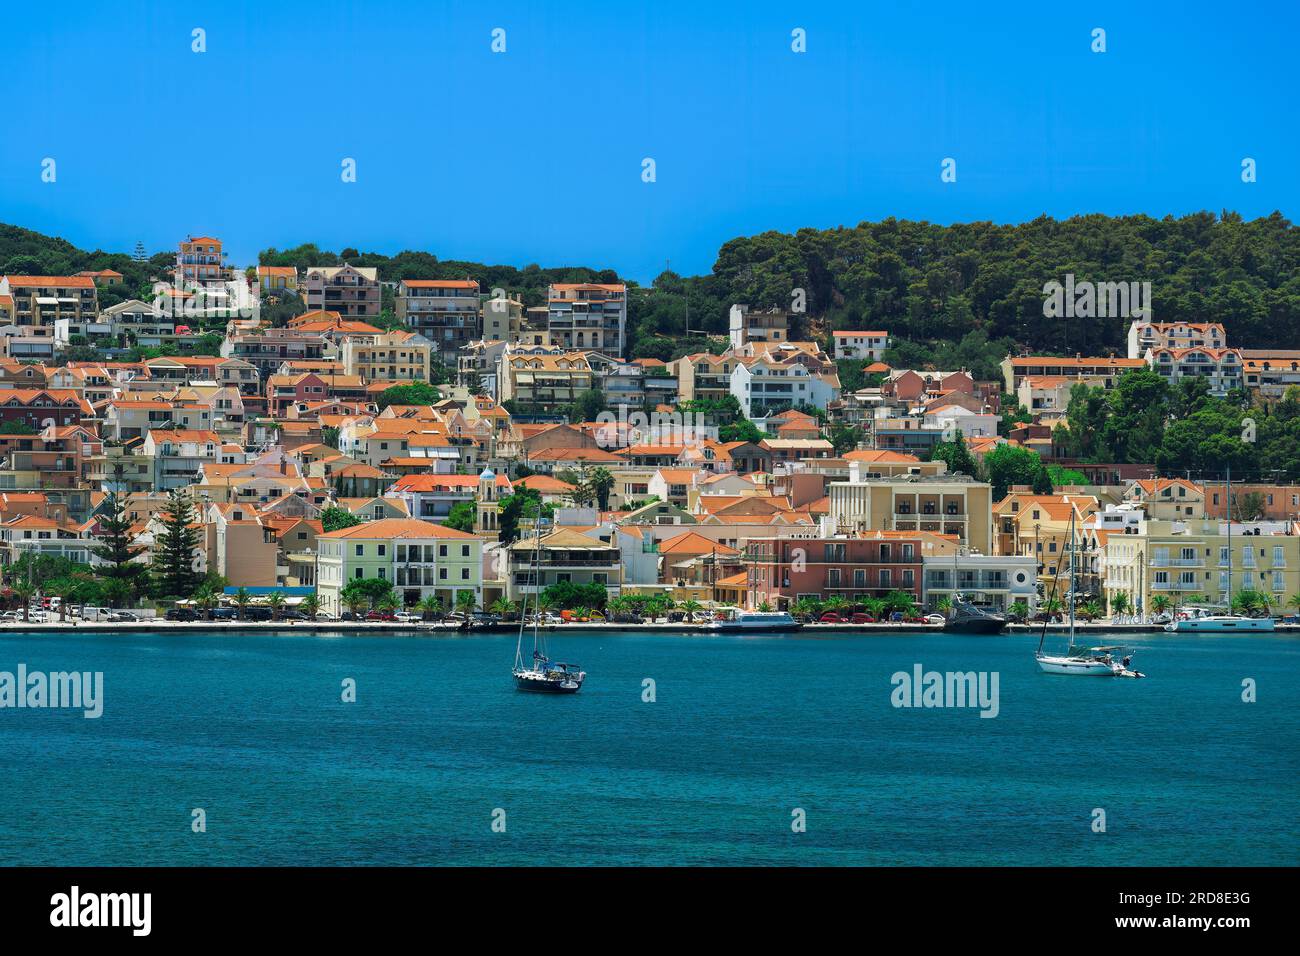 Panorama de la ville en bord de mer avec des bâtiments de faible hauteur, Argostoli, Cephalonia Ionia Islands, Greece Islands, Greece, Europe Banque D'Images